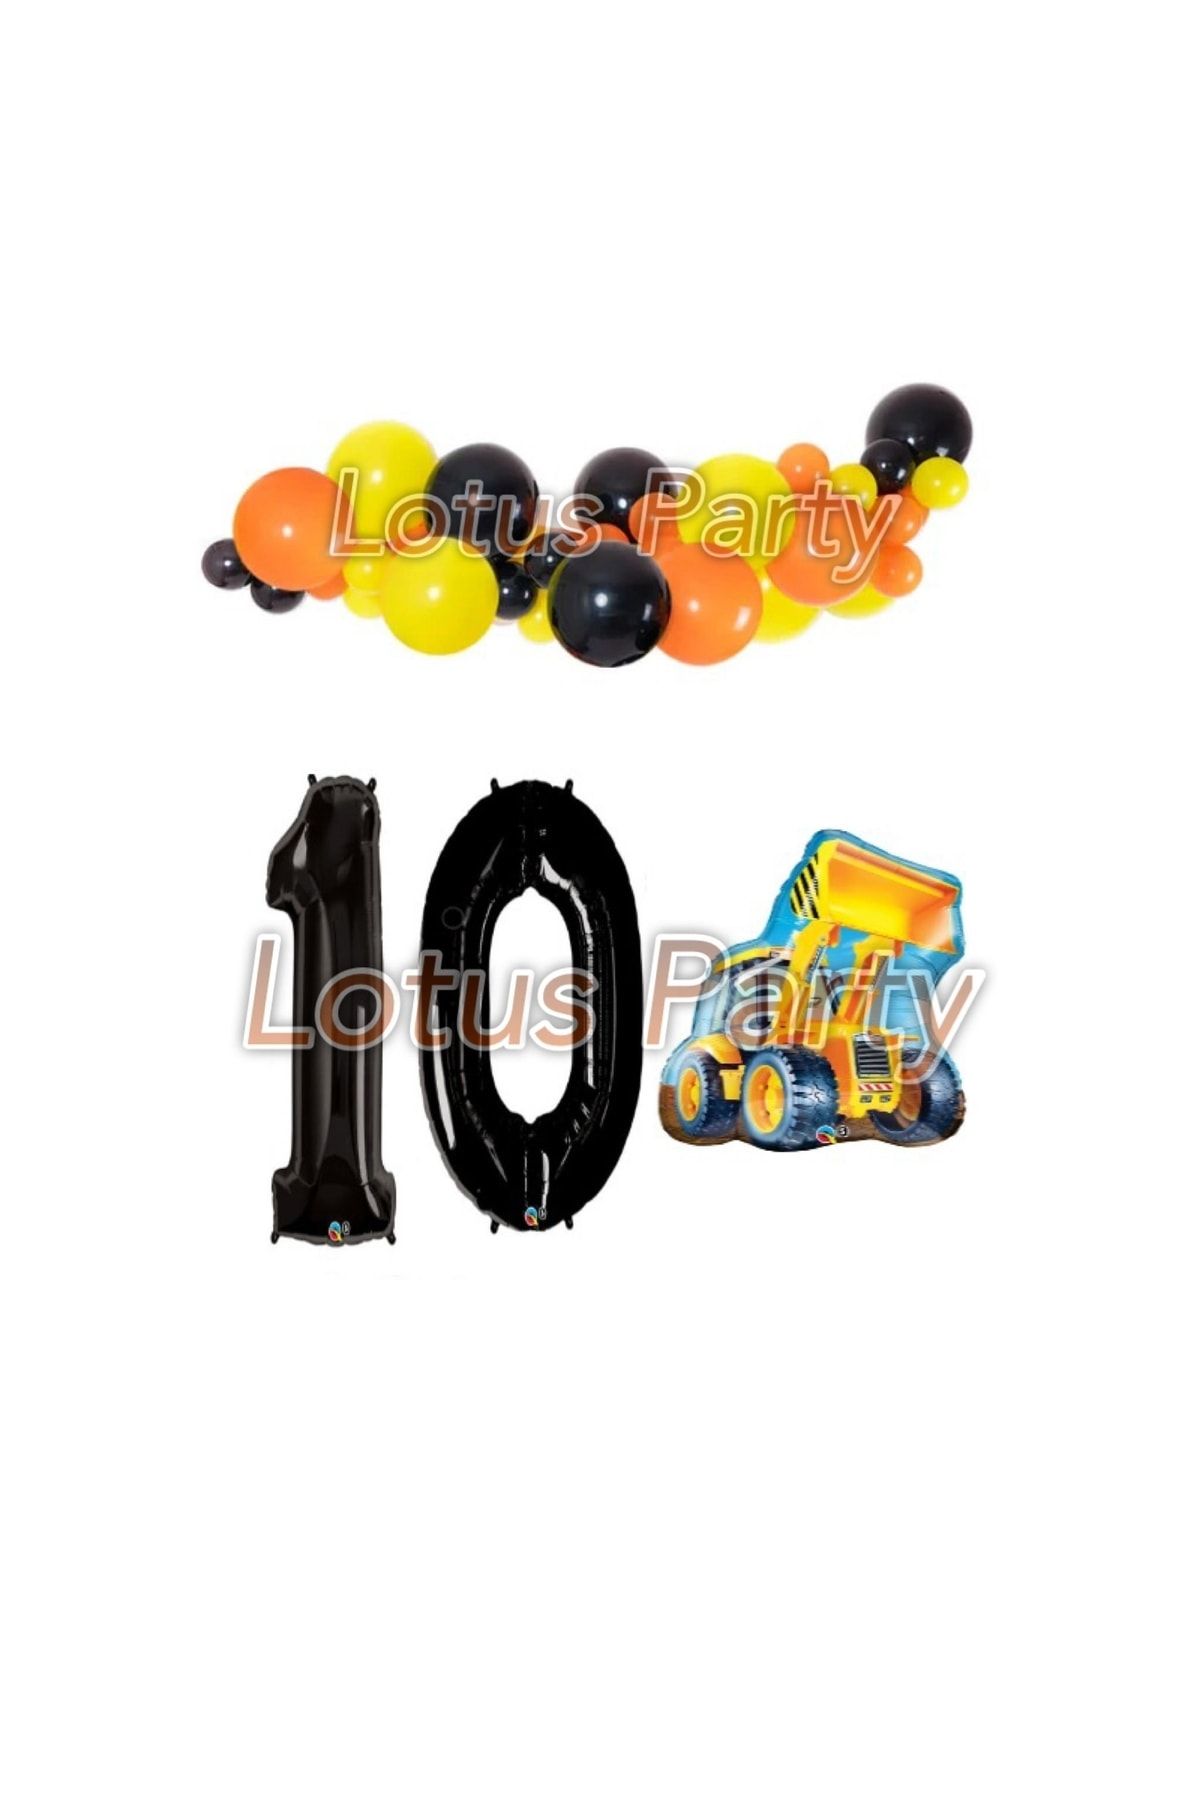 LOTUS PARTY 10 Yaş Inşaat Temalı Balon Zinciri Seti ( Kepçe Folyo Siyah Sarı Turuncu Balon )